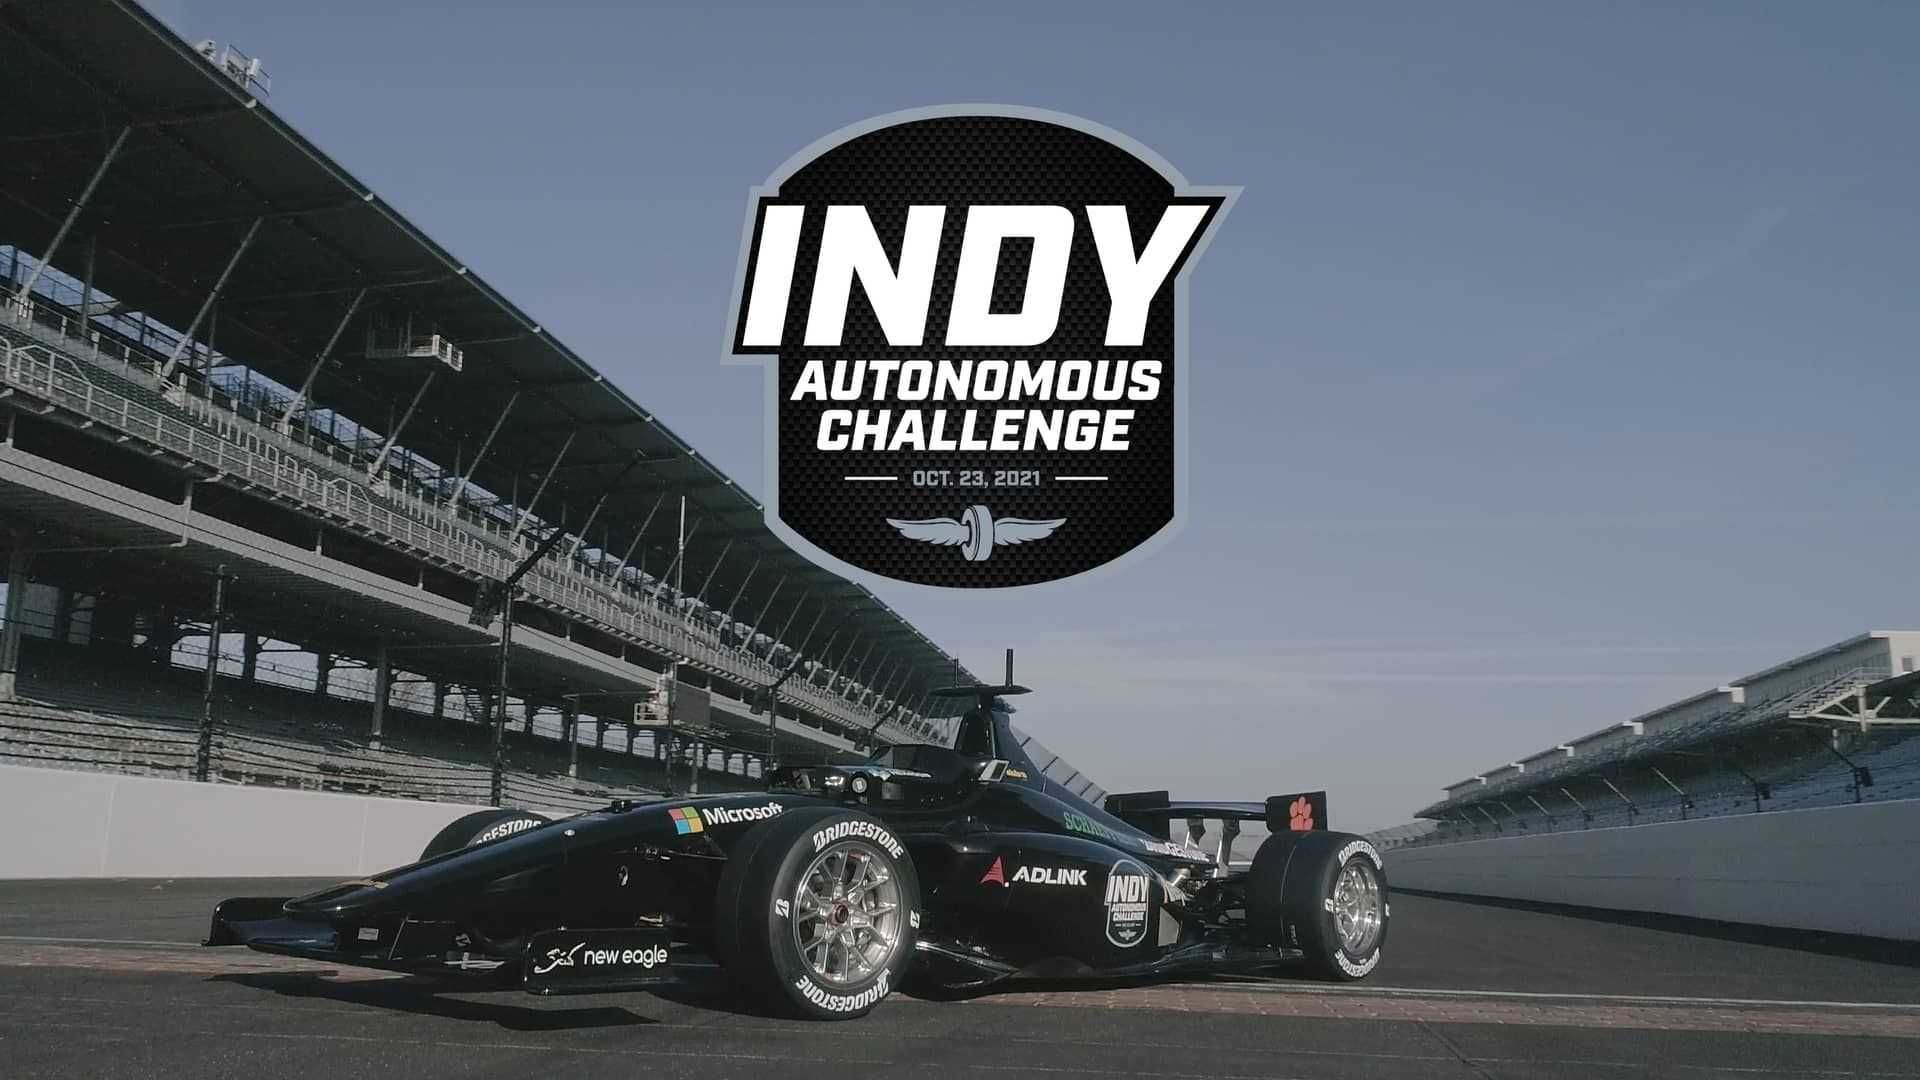 مرجع متخصصين ايران نماي جلو خودرو خودران ايندي كار / IndyCar Autonomous Series در پيست ايندياناپوليس 